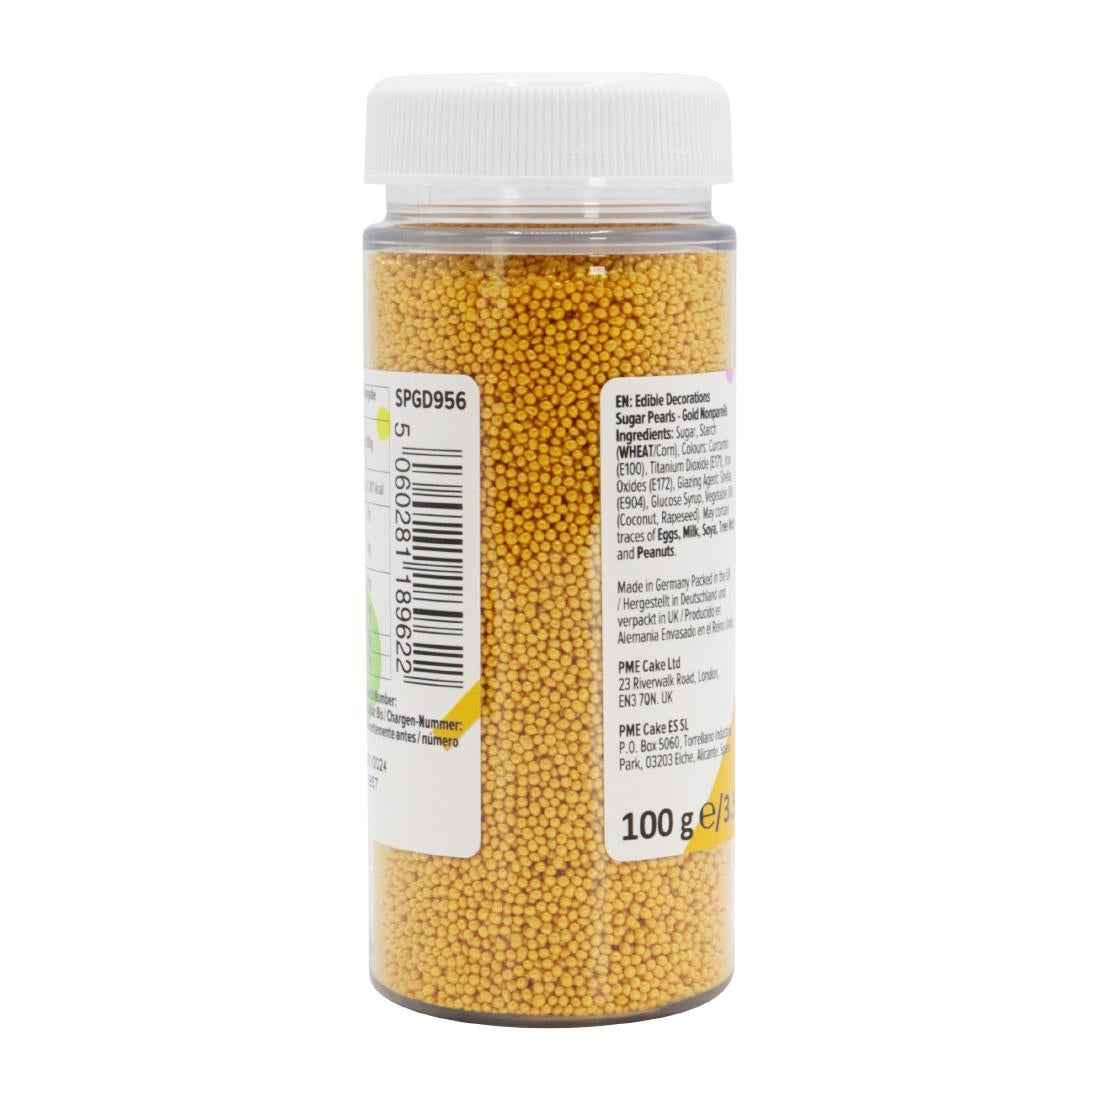 HU216 PME Sugar Pearls Nonpareils 100g - Gold